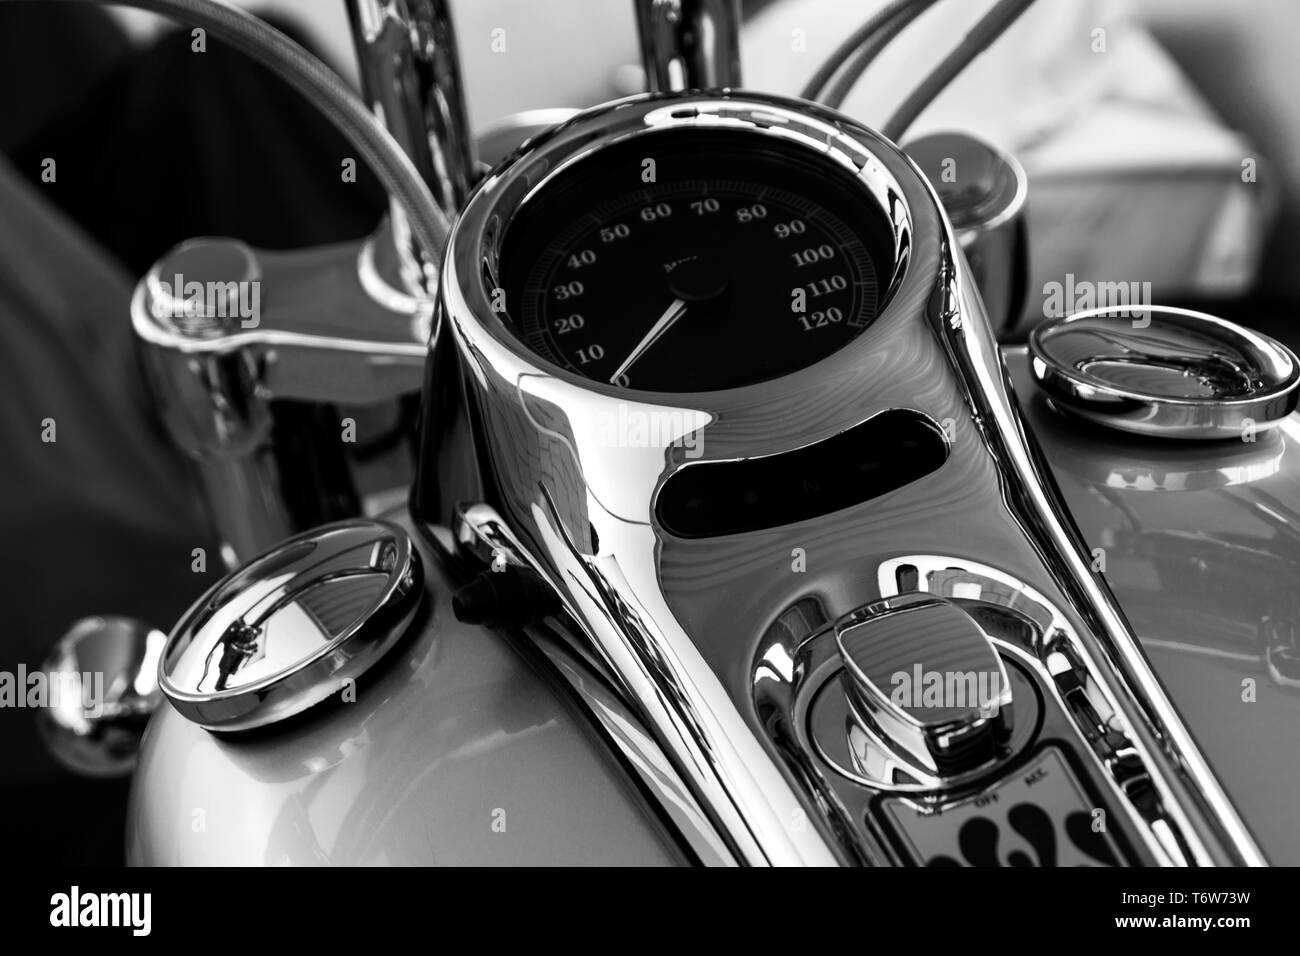 Motorrad-Instrumententafel. Tachometer Und Drehzahlmesser Aus Nächster  Nähe. Lizenzfreie Fotos, Bilder und Stock Fotografie. Image 158081125.